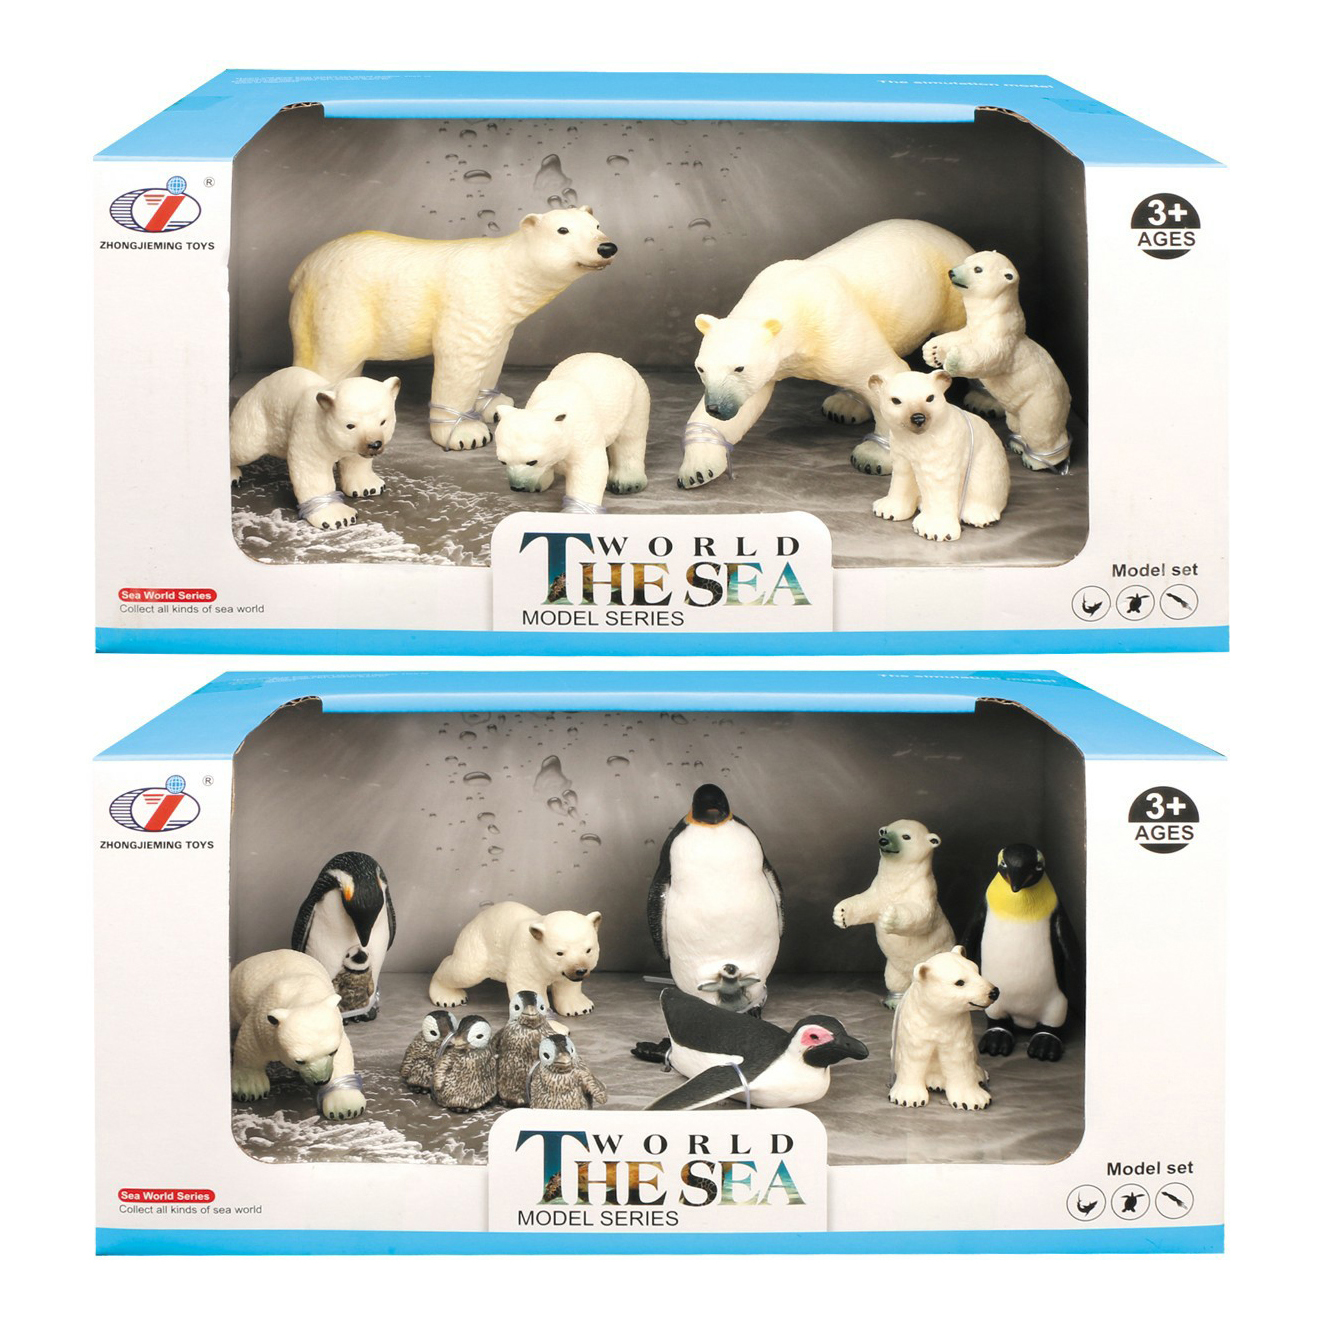 Игровой набор Zhongjieming Toys Арктические животные ассортименте